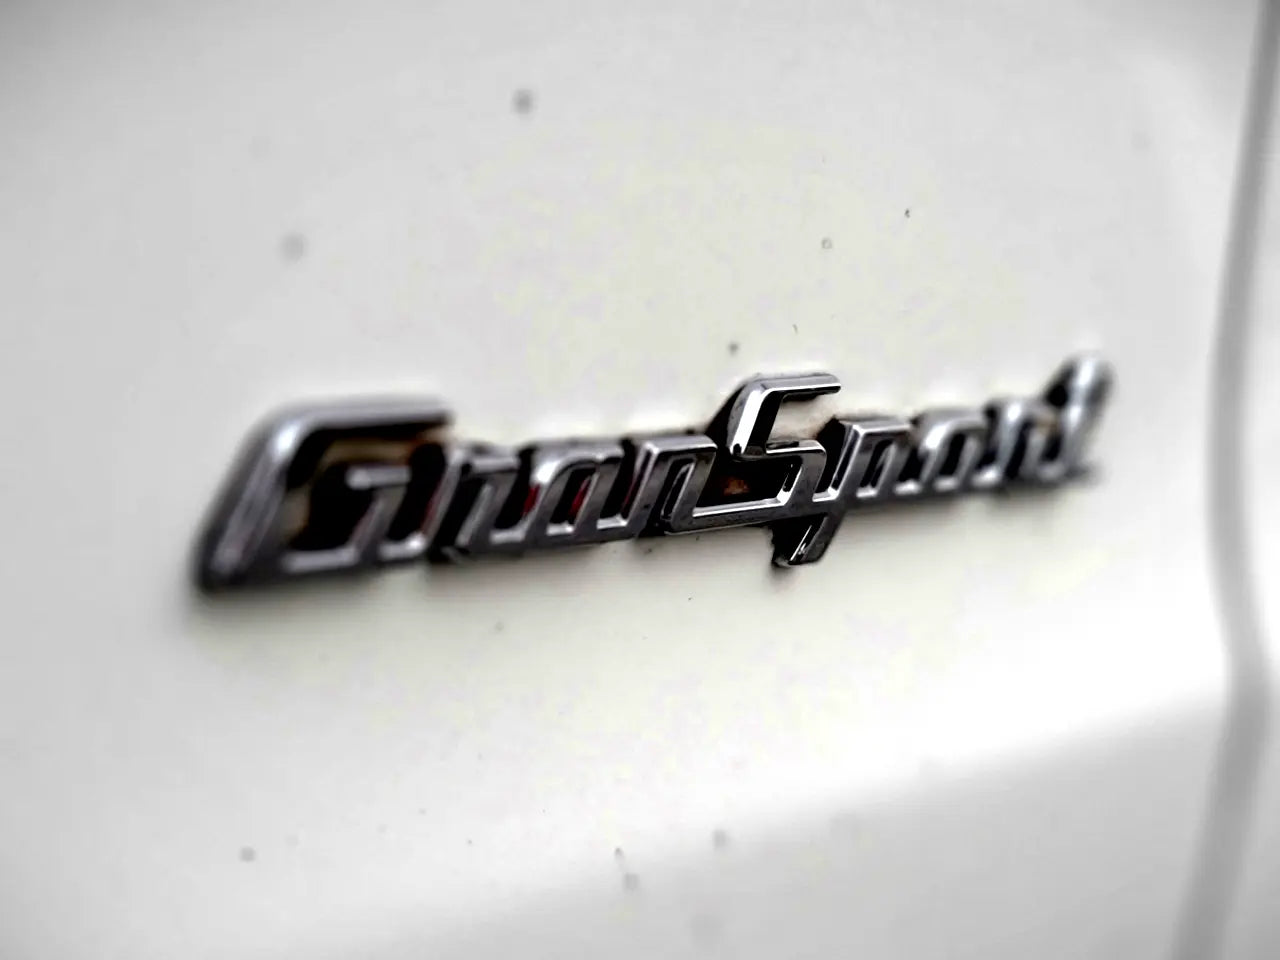 2017 Maserati Quattroporte 4dr Sdn Quattro Porte Sport GT S $2499 DOWN AND DRIVE IN 1 HOUR!